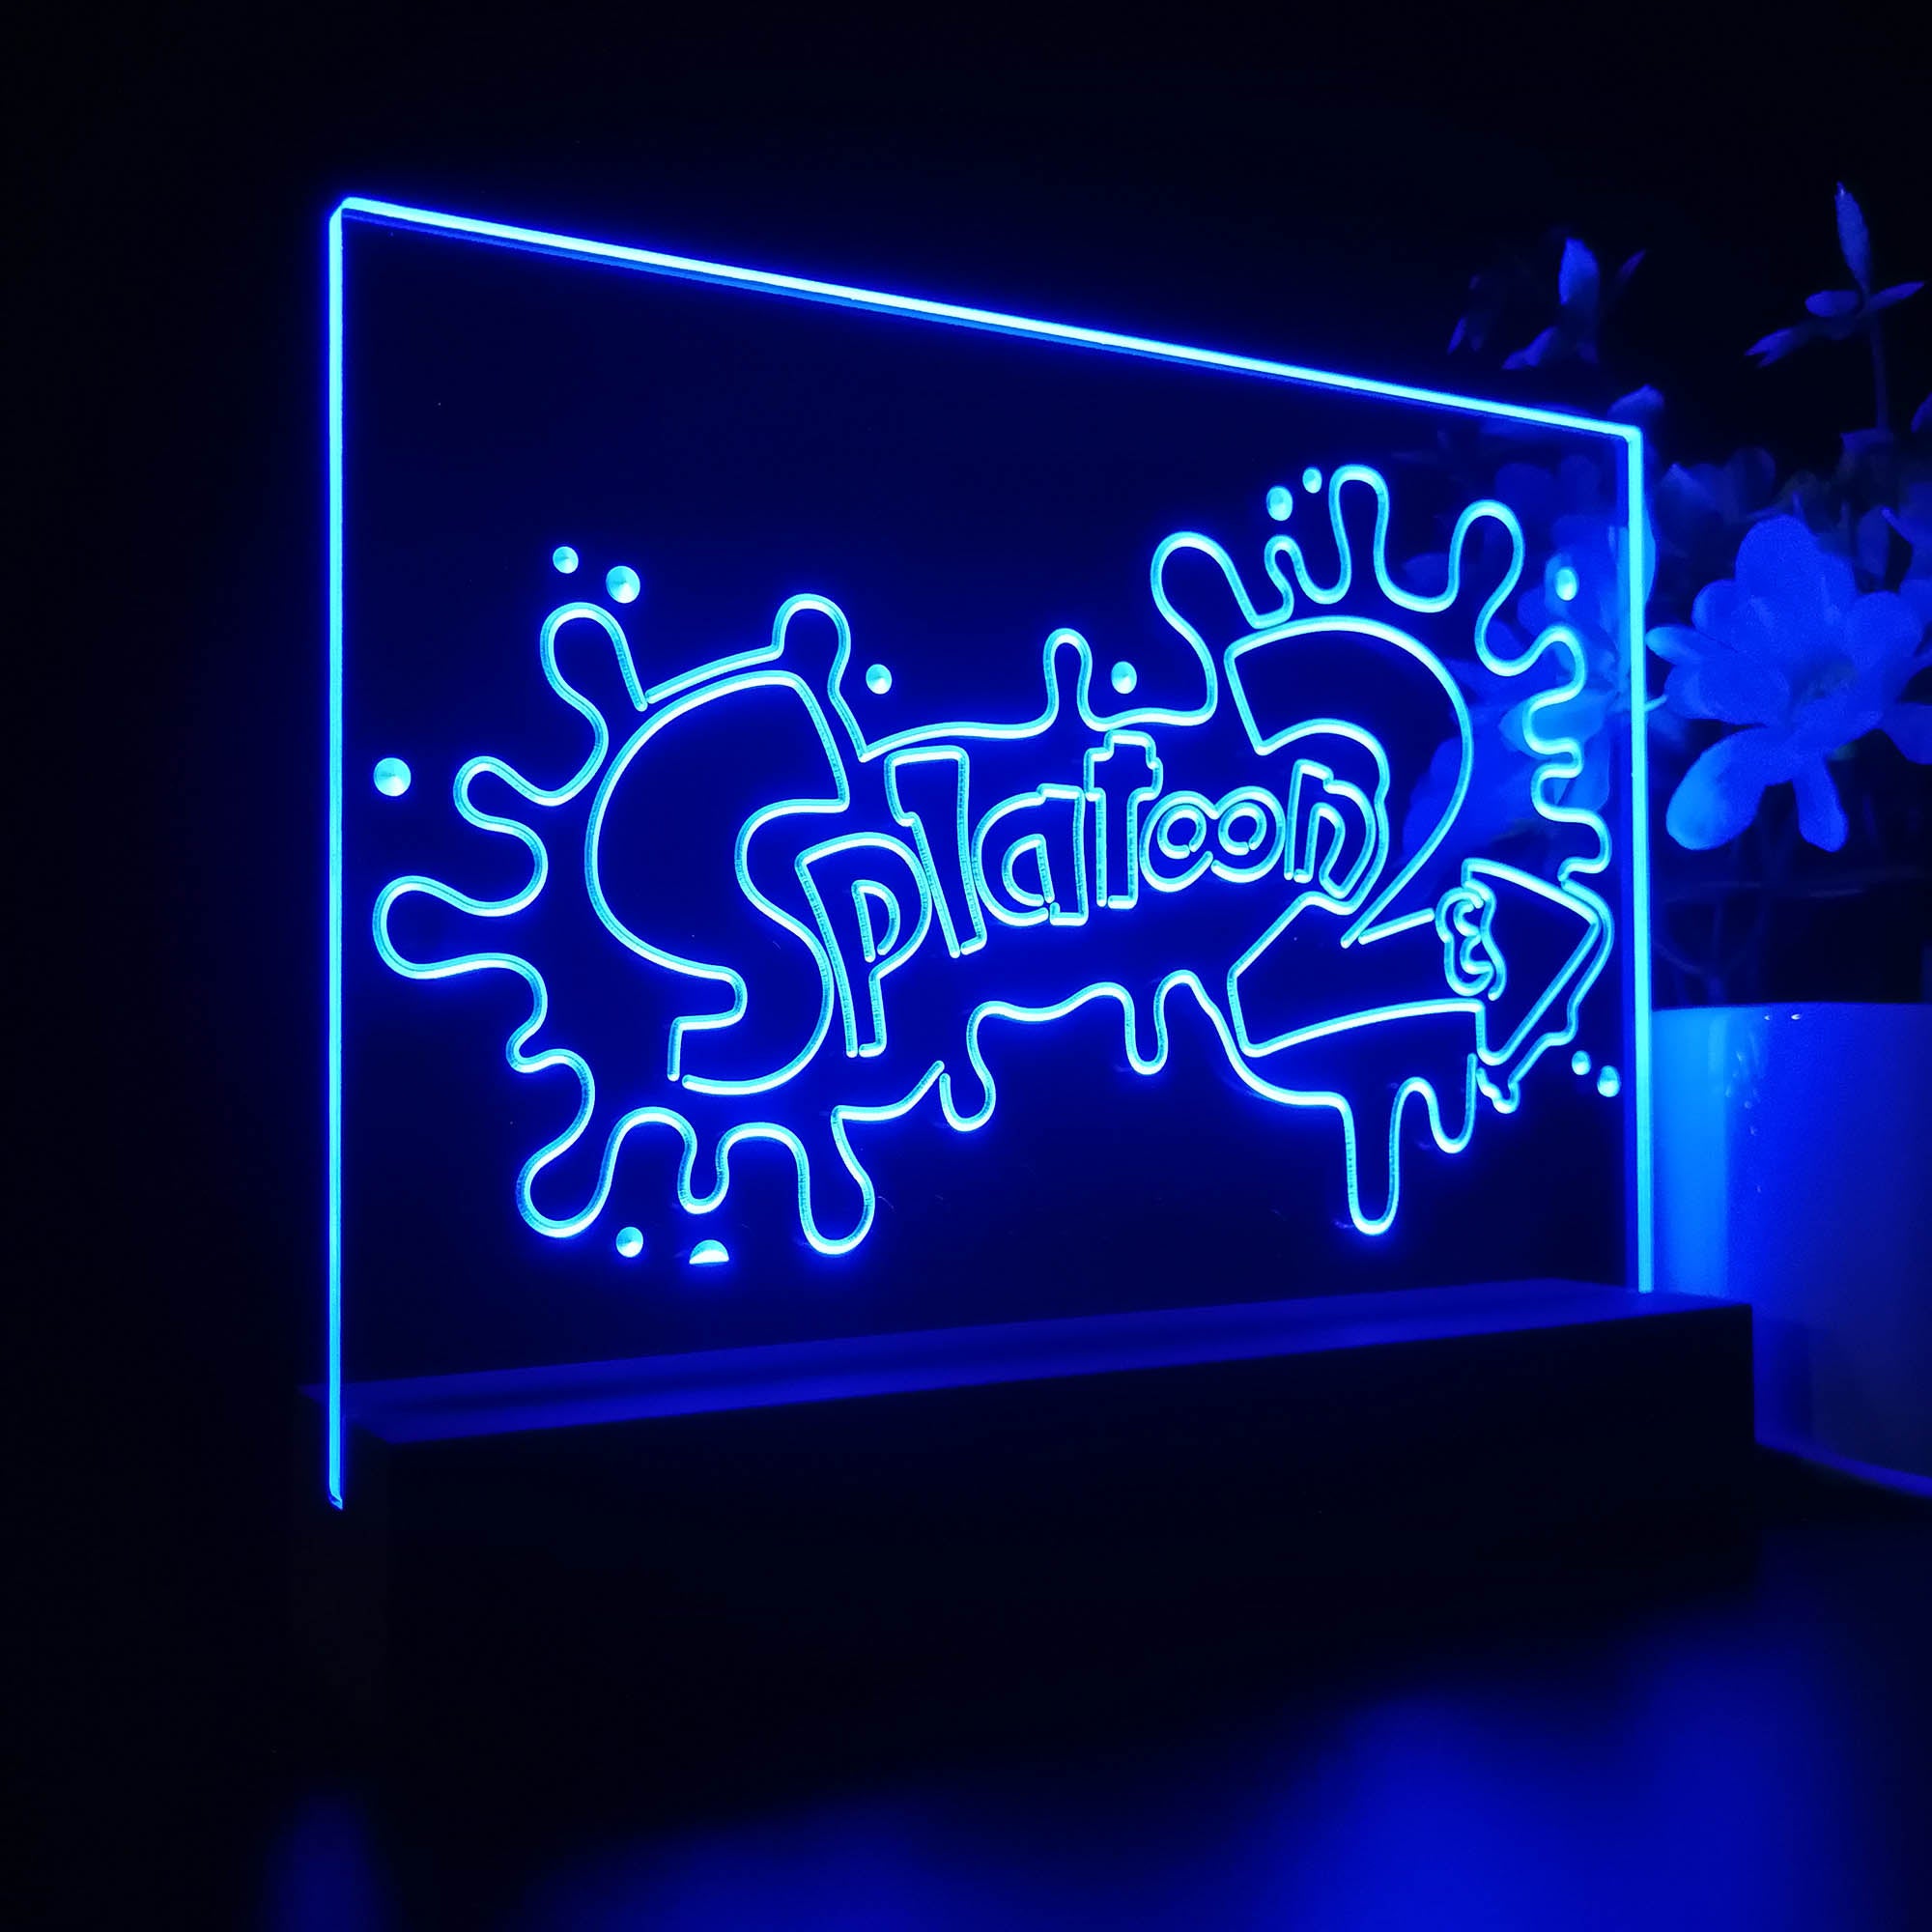 Splatoon 2 3D LED Optical Illusion Sleep Night Light